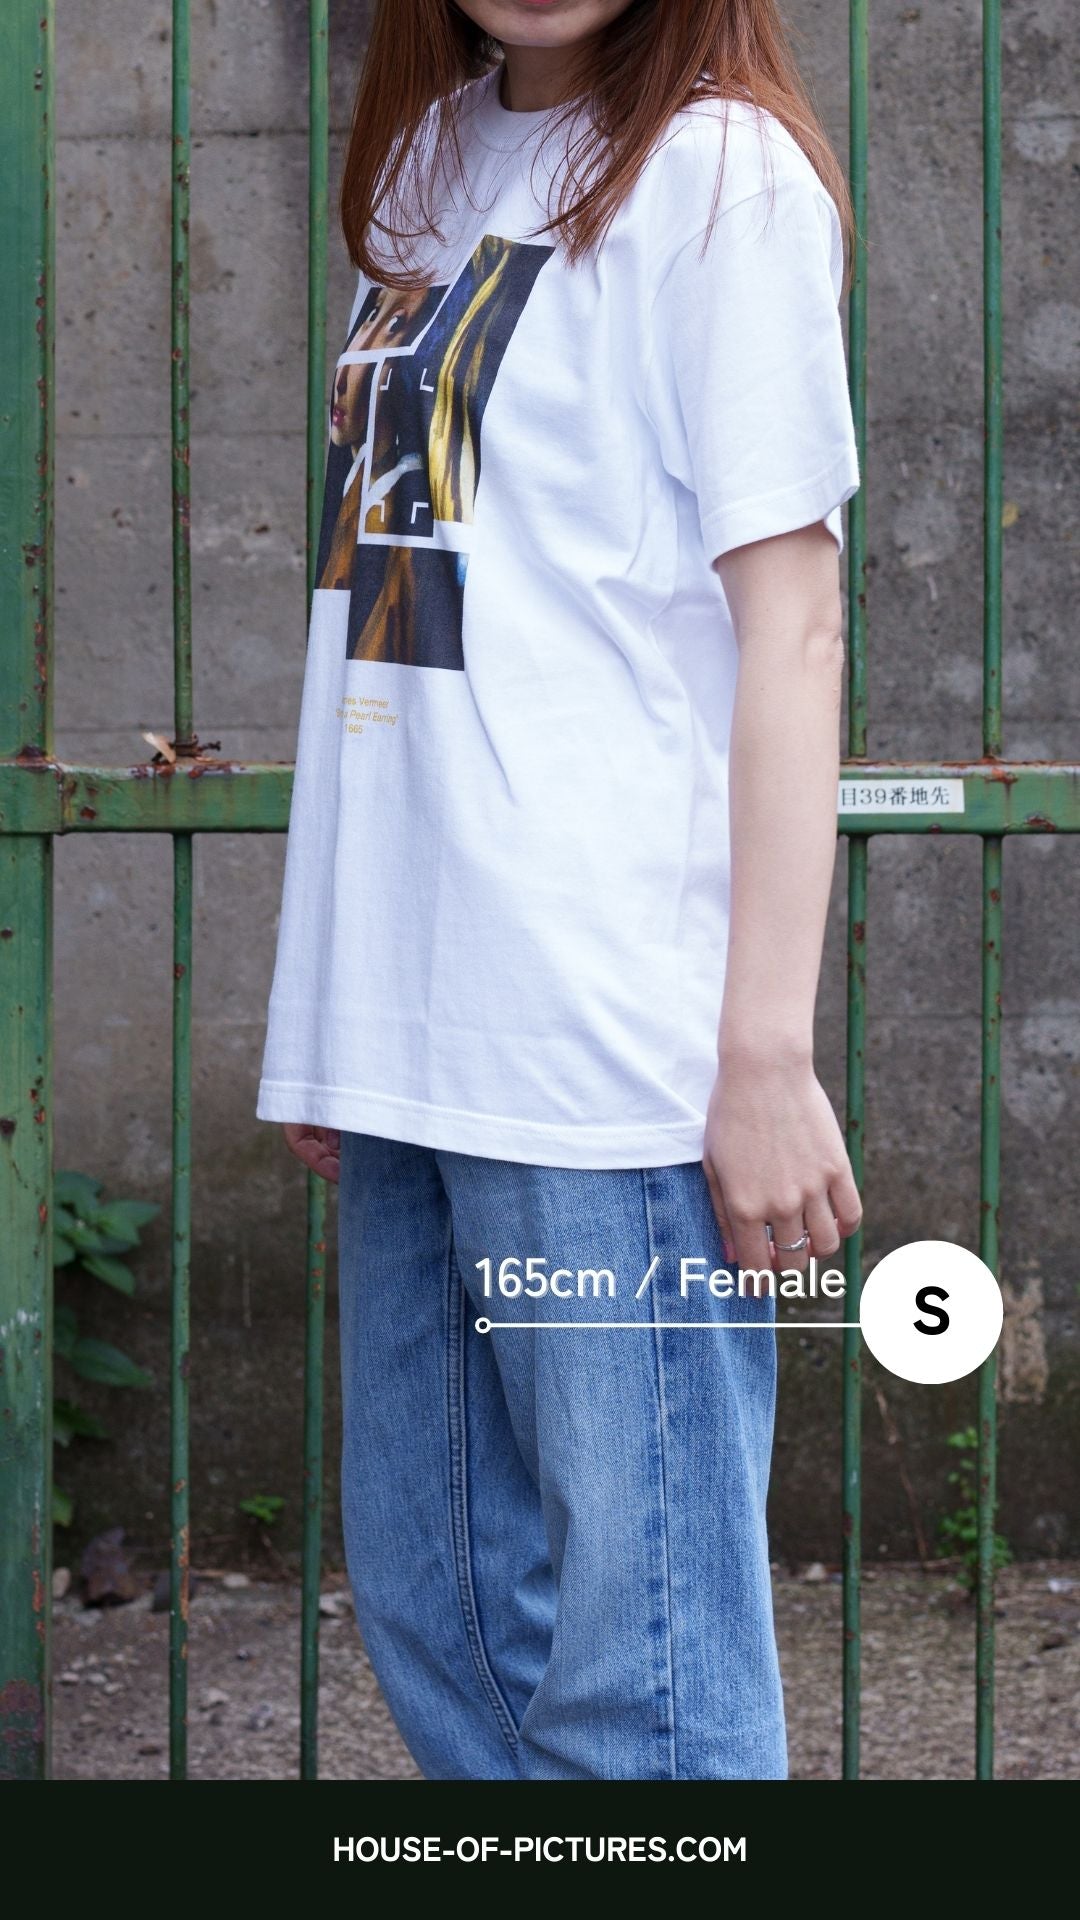 ヨハネス・フェルメール-真珠の耳飾りの少女 / 半袖クルーネックTシャツ